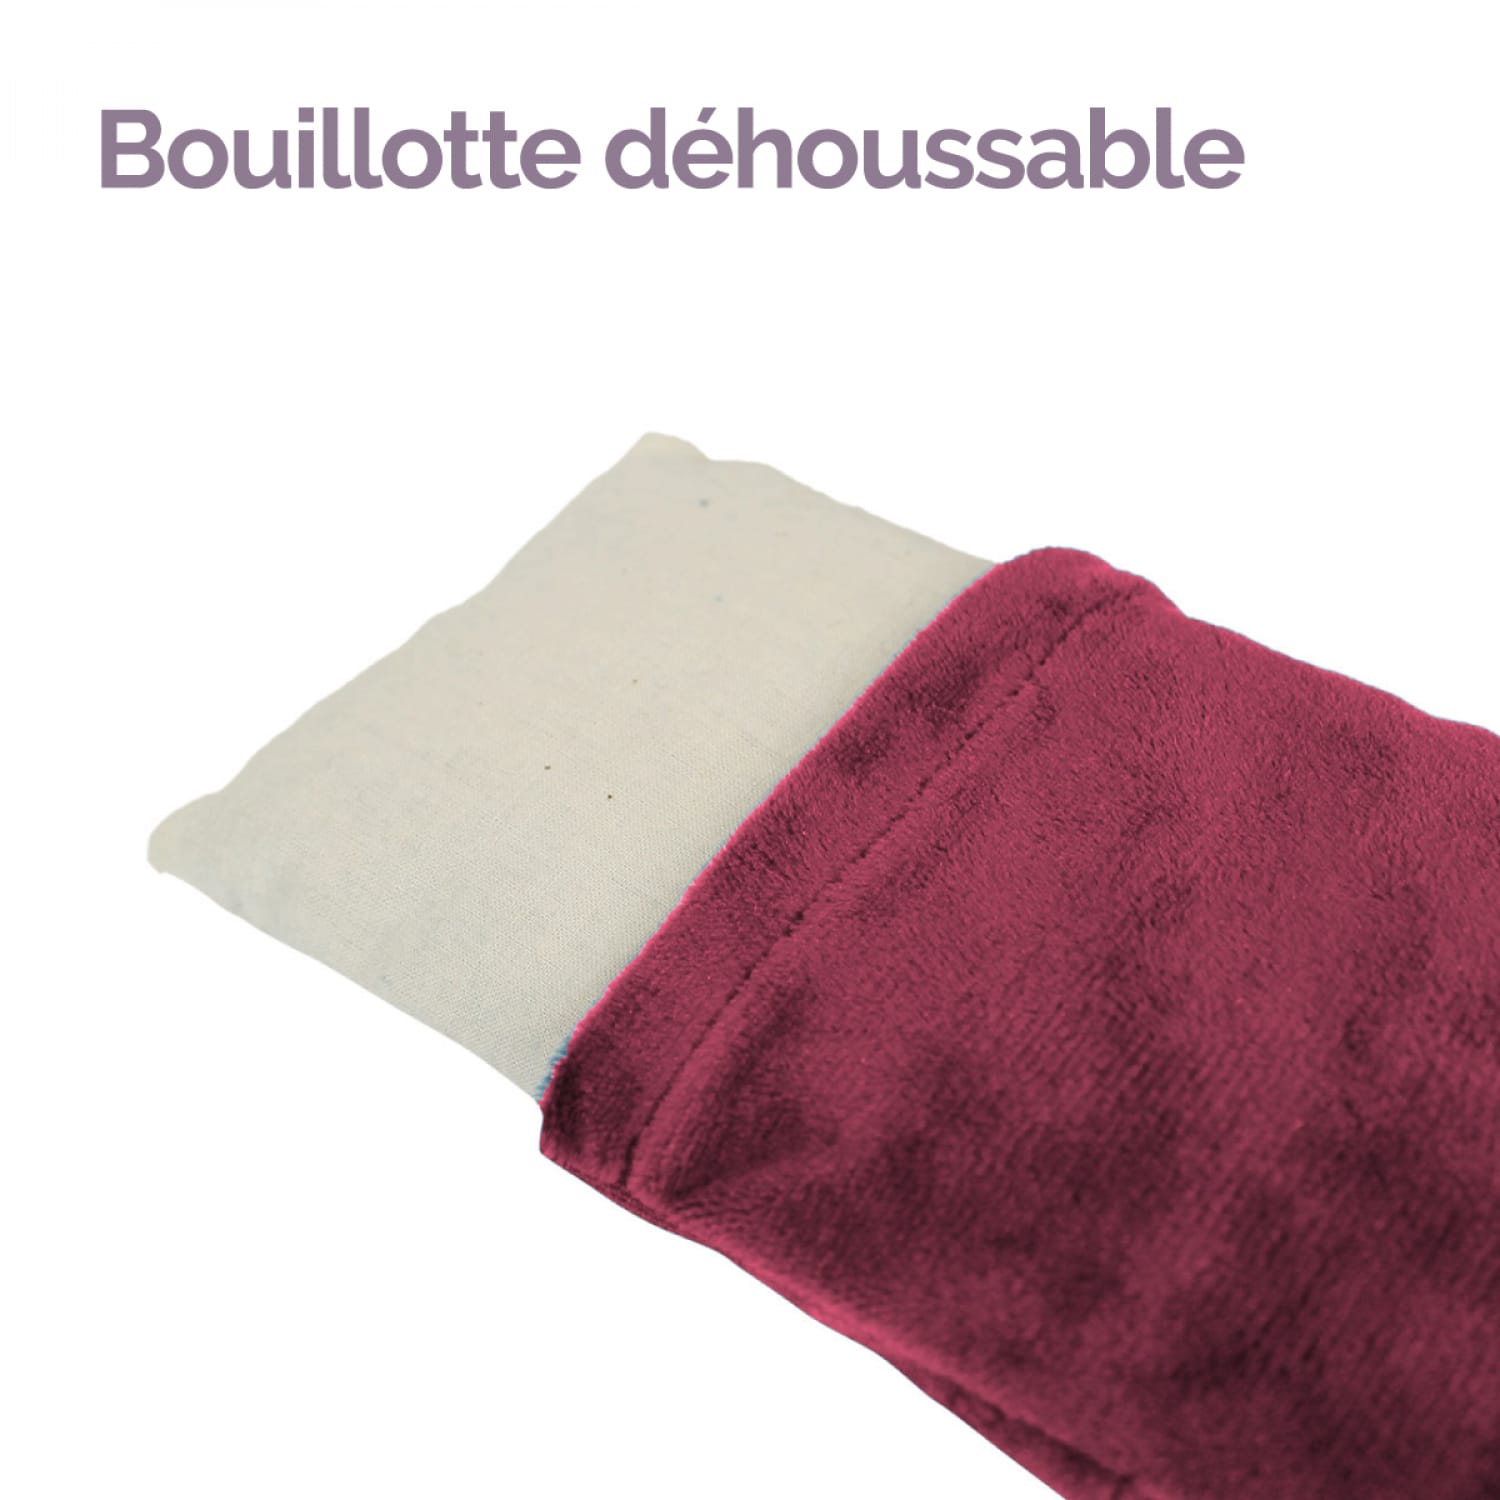 Bouillotte standard, chauffe micro-ondes, blé & lavande, couleur prune